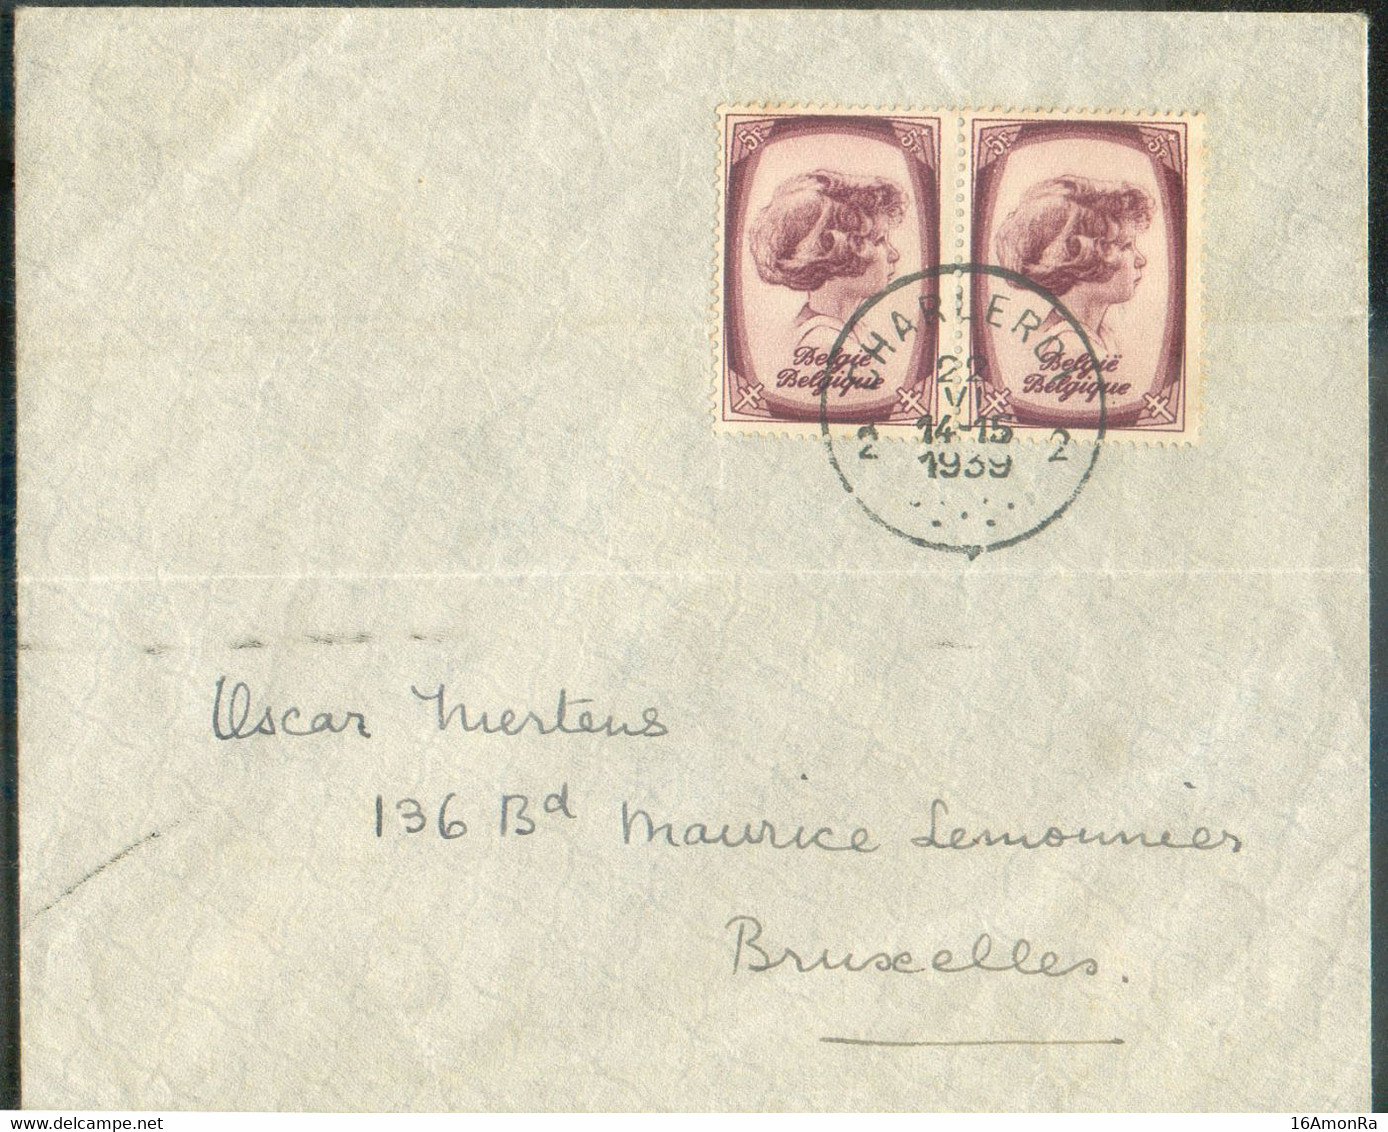 N°495(2) - 5Fr. PRINCE ALBERT (paire) Obl. Sc CHARLEROI 2 sur Enveloppe Du 22-VI-1939 Vers Bruxelles. - TB - 20425 - Brieven En Documenten